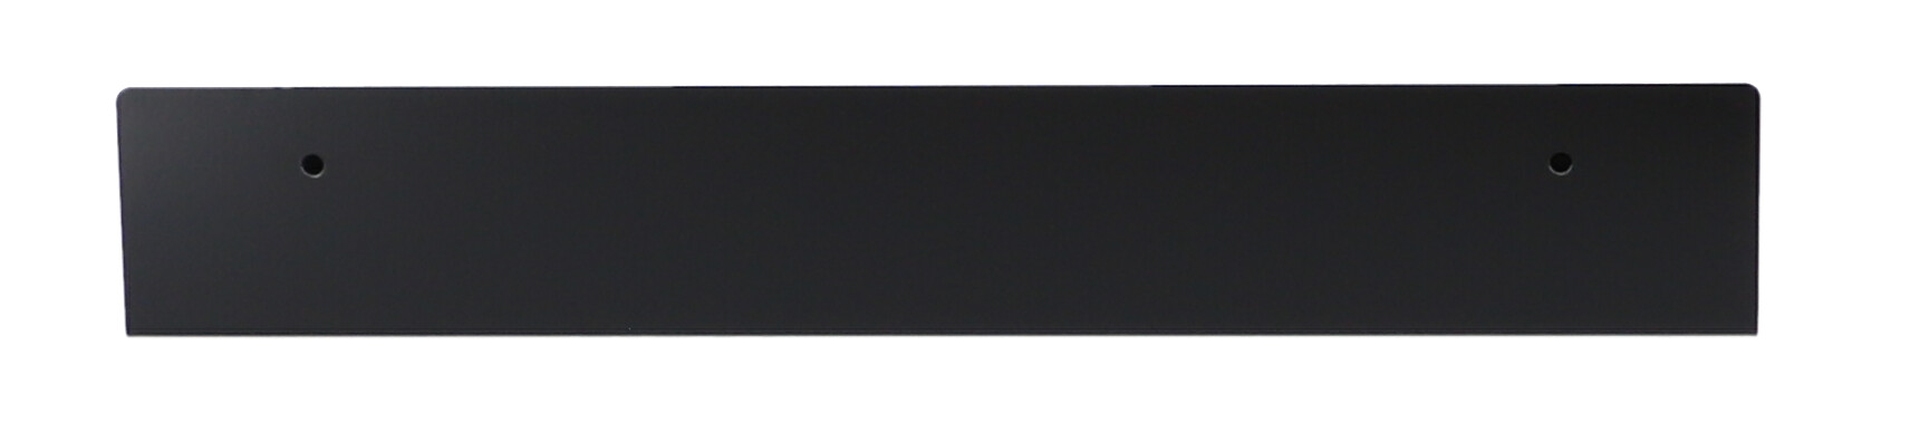 Das Wandregal Jill wurde aus Metall gefertigt und hat einen schwarzen Farbton. Die Breite beträgt 50 cm. Das Design ist schlicht aber auch modern. Das Regal ist ein Produkt der Marke Jan Kurtz.